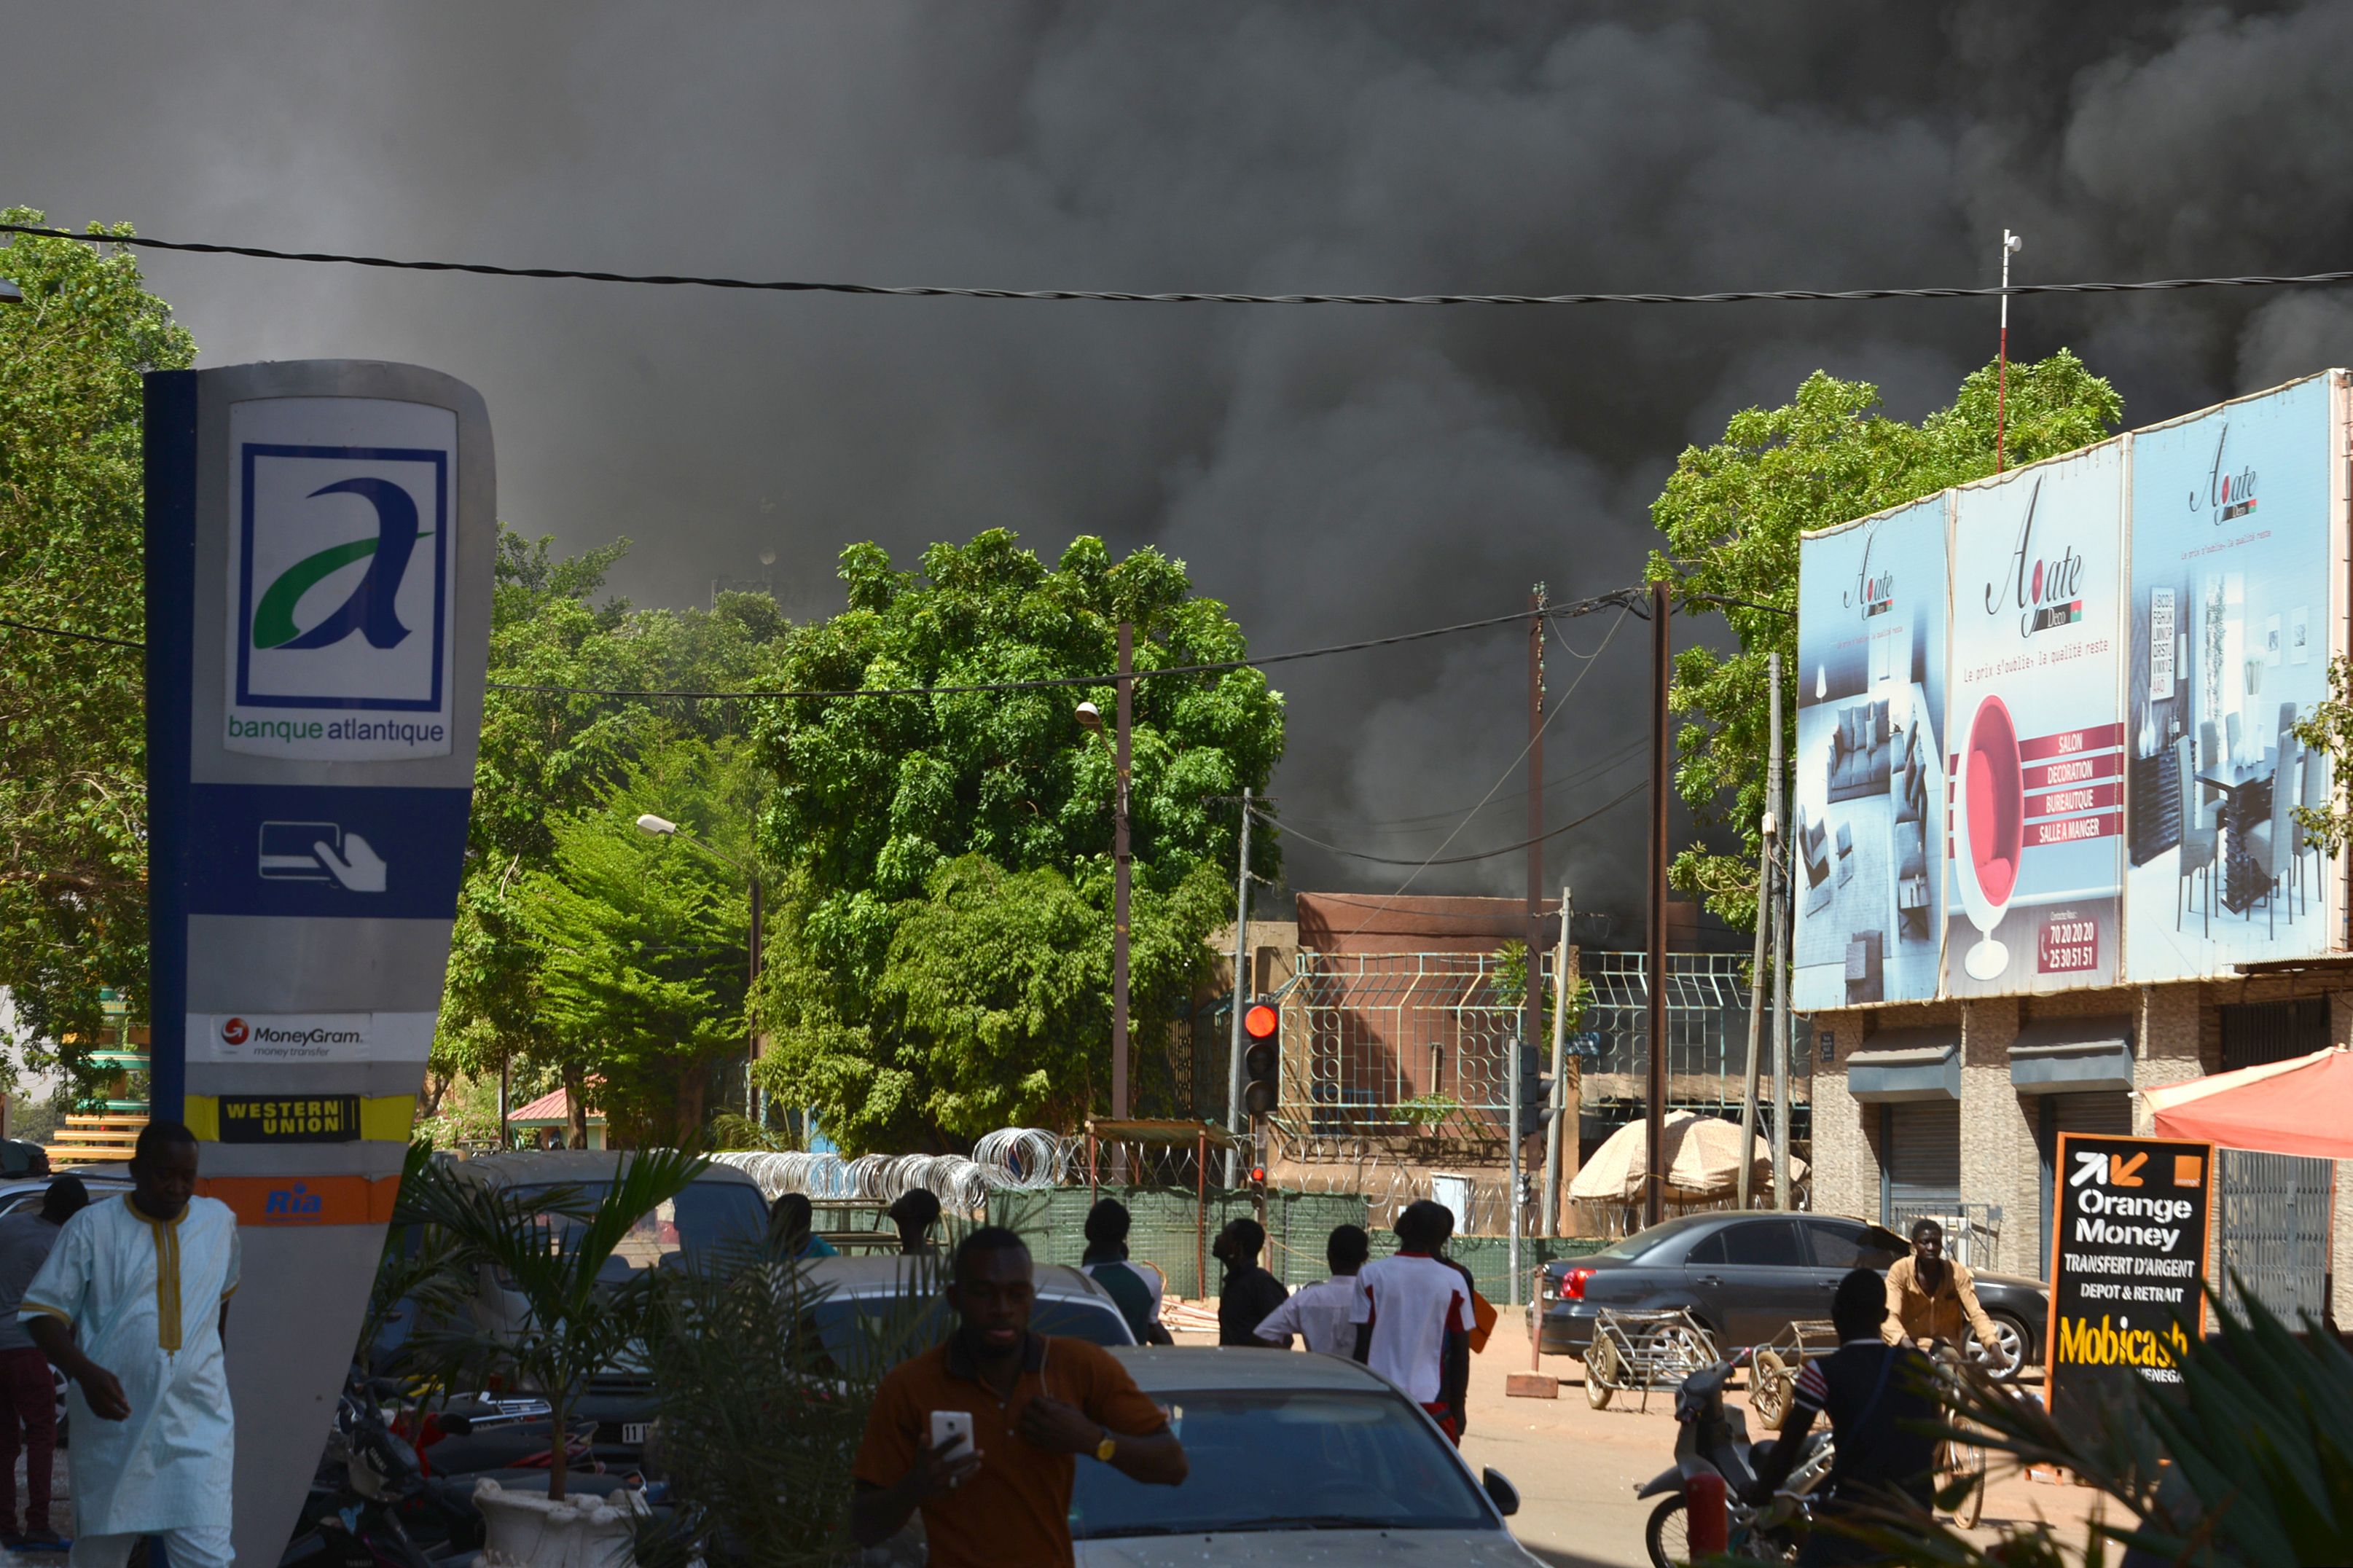 هجوم فى بوركينا فاسو